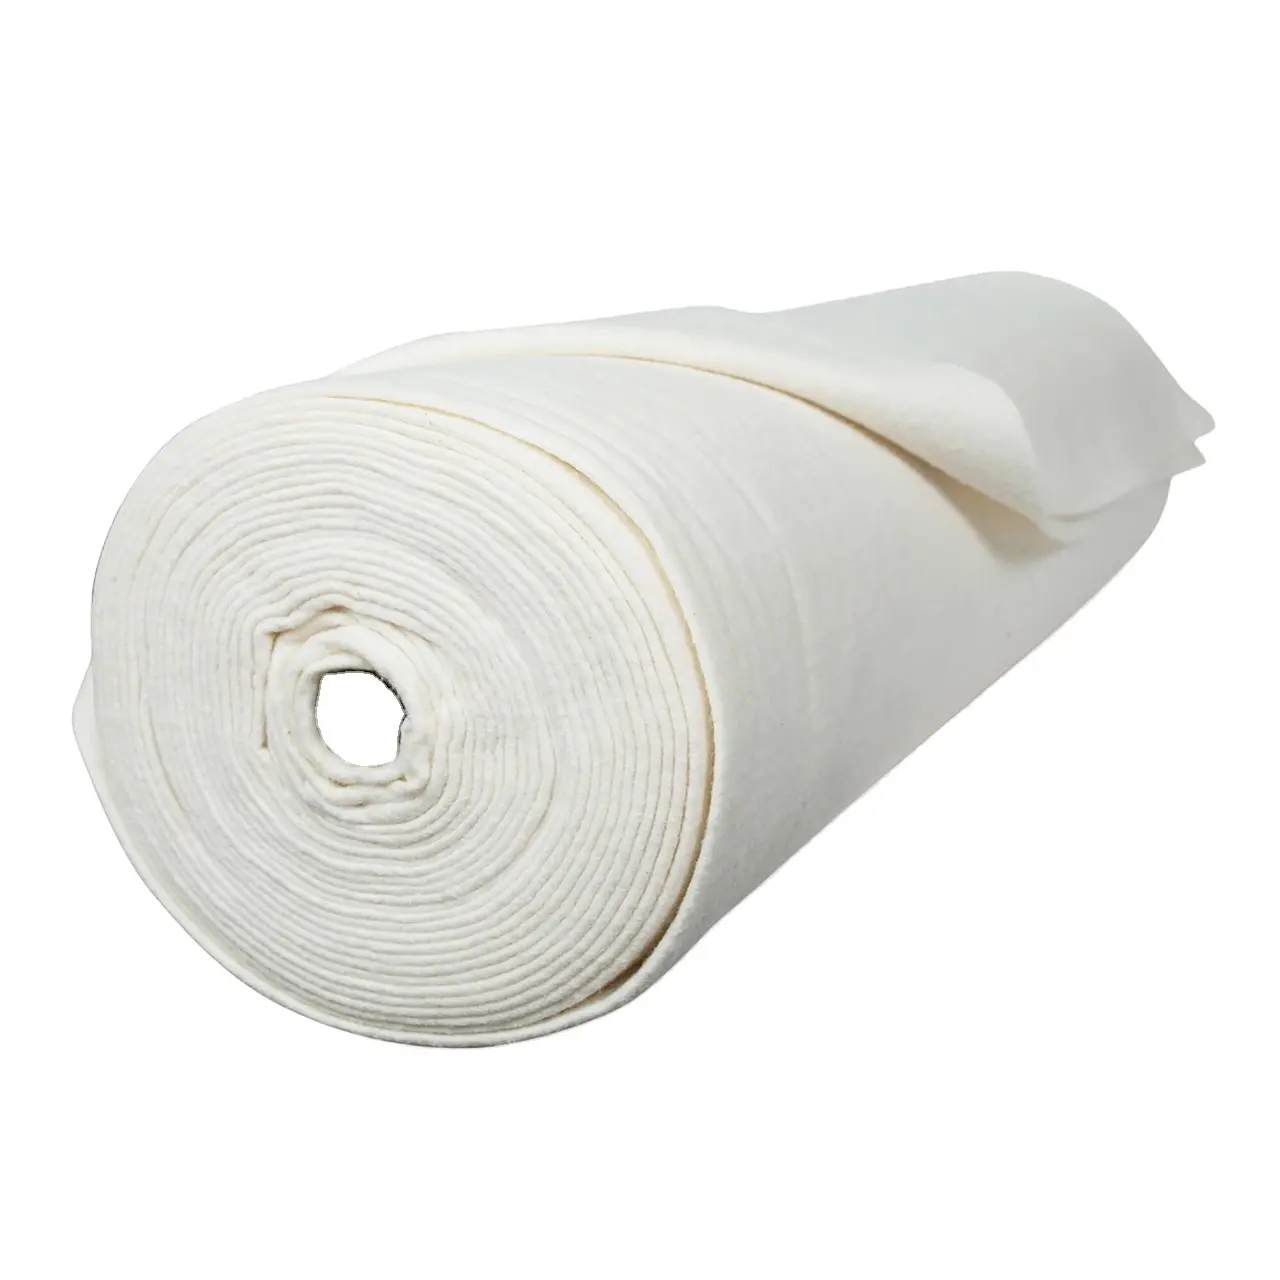 Tela blanqueada blanca para el hogar, textil 52% de algodón y poliéster, certificado Oeko Tex, 76x68, 24x24, 48%